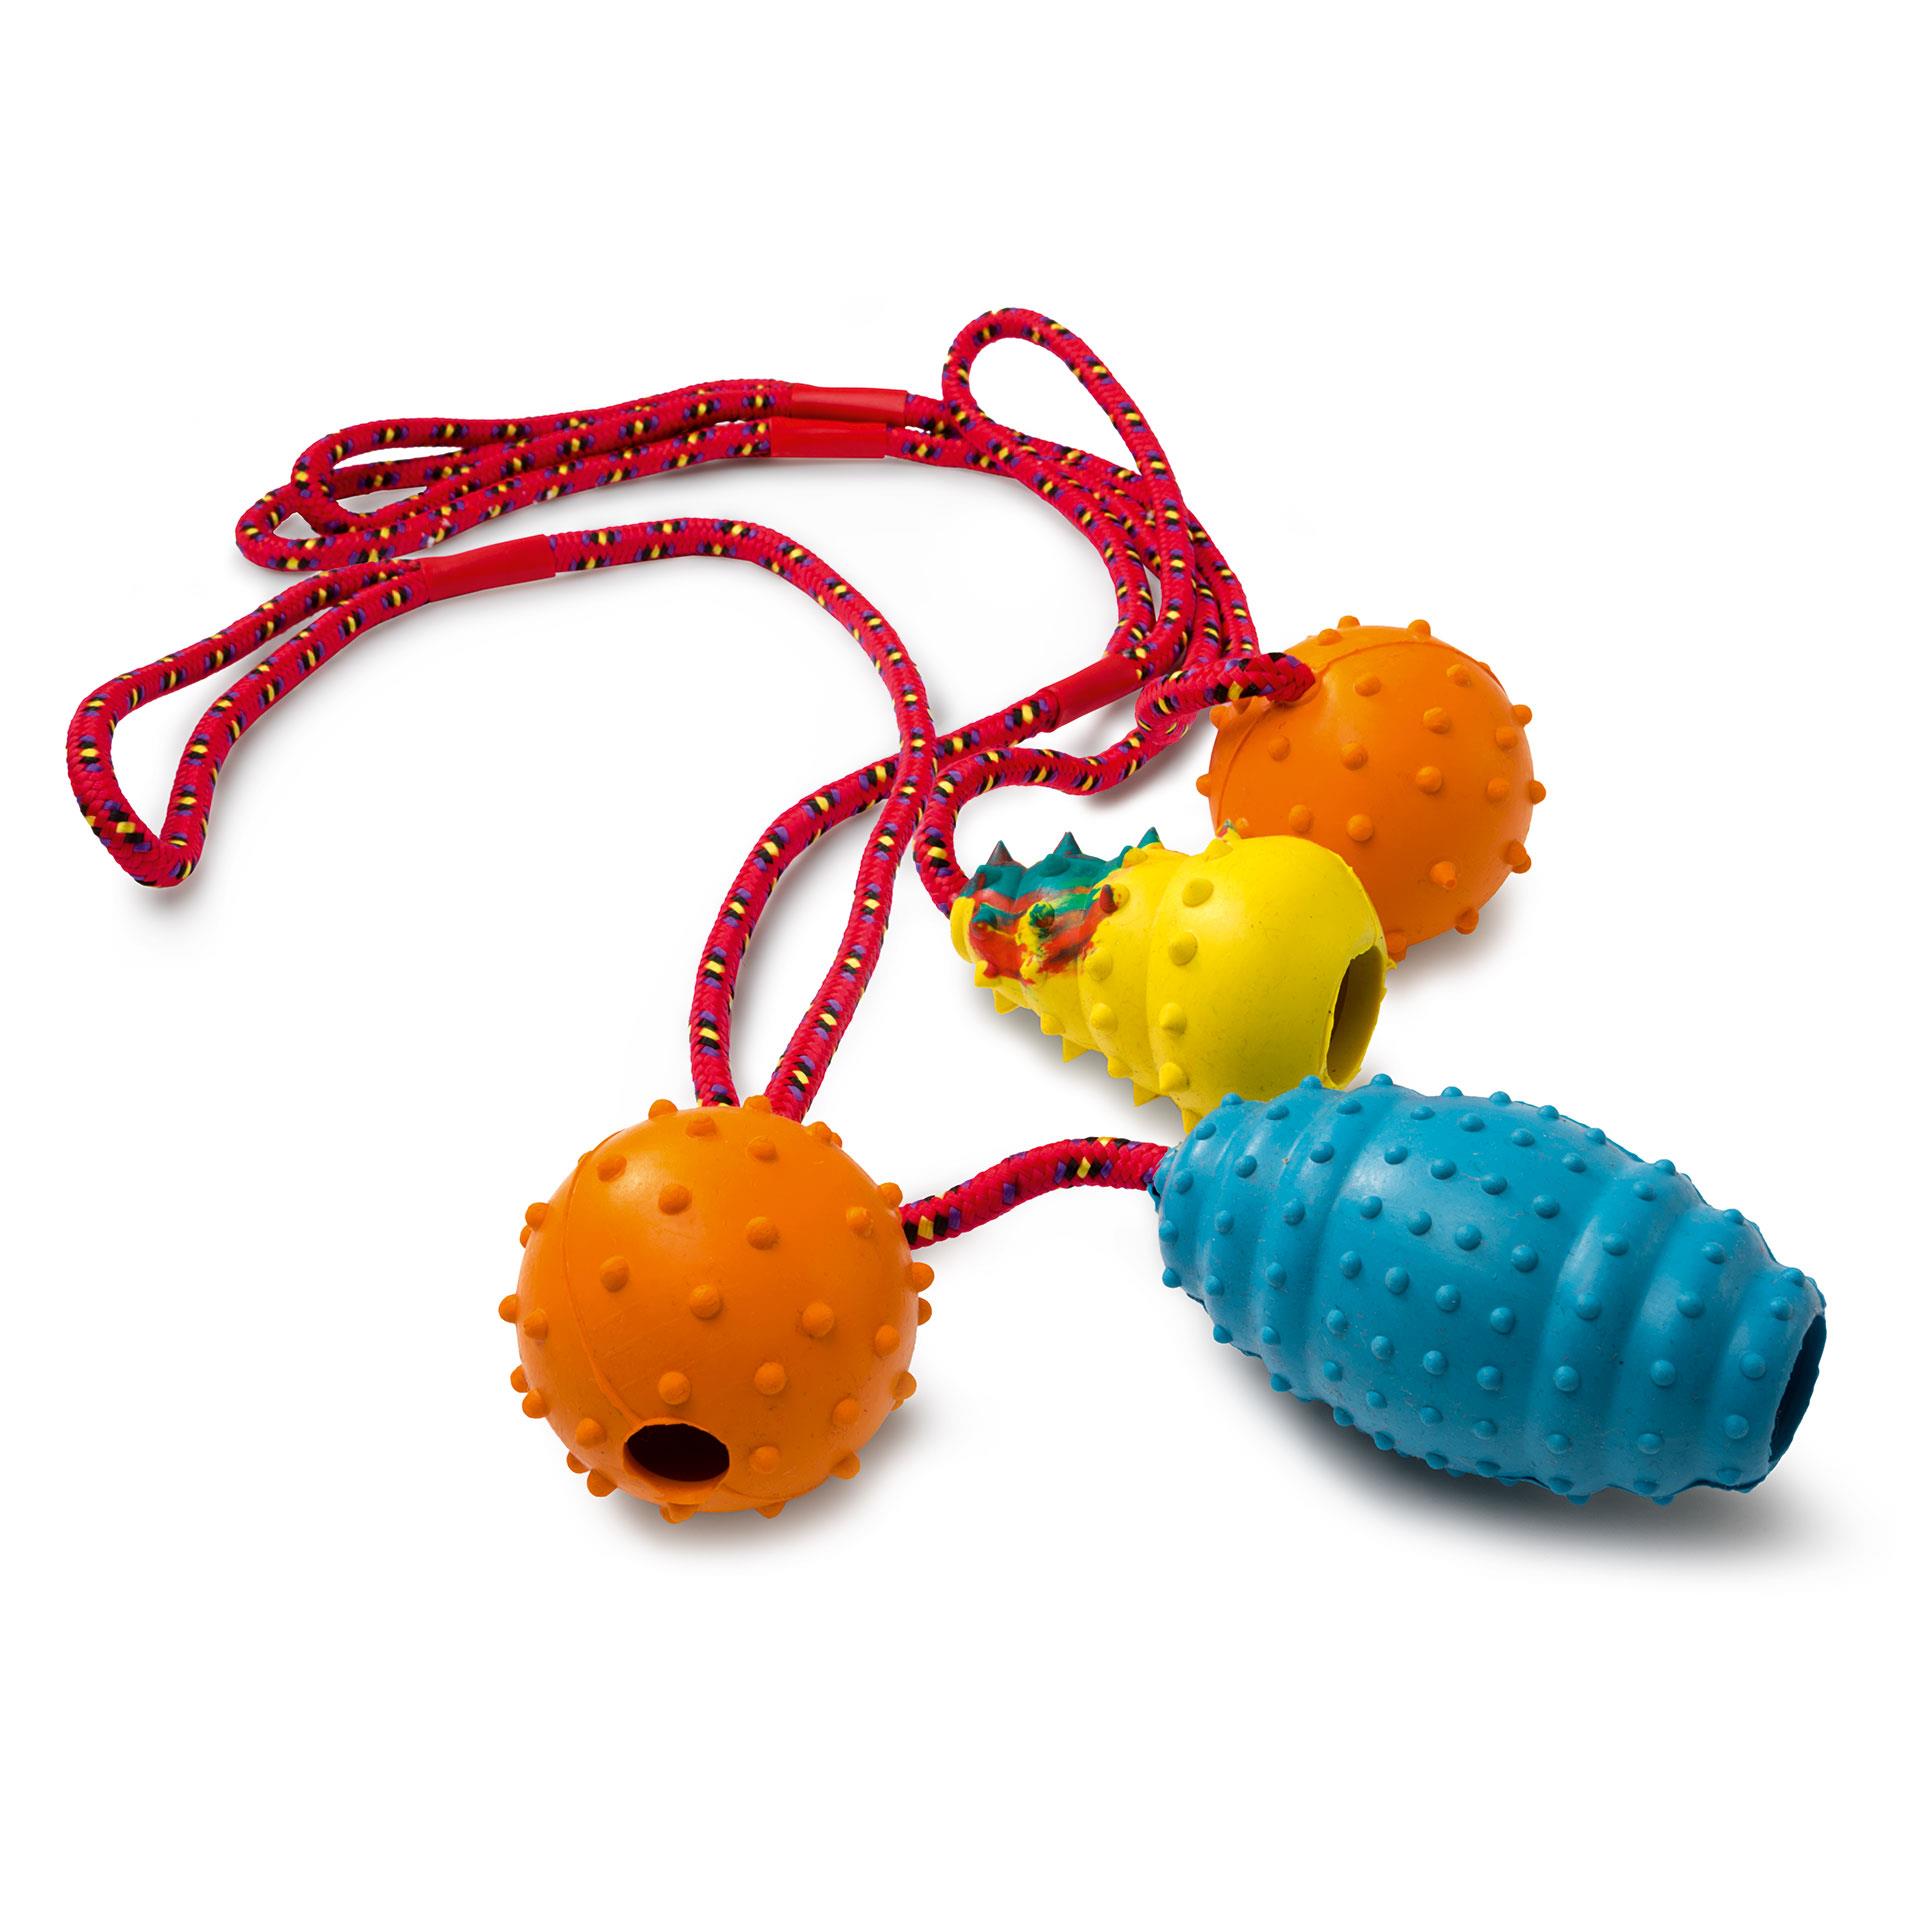 Hundespielzeug aus Gummi an roter Schnur mit Schlaufe: je 2 runde orange Wurfkongs, 1 ovaler blauer Wurfkong und 1 trapezförmiger gelber Wurfkong